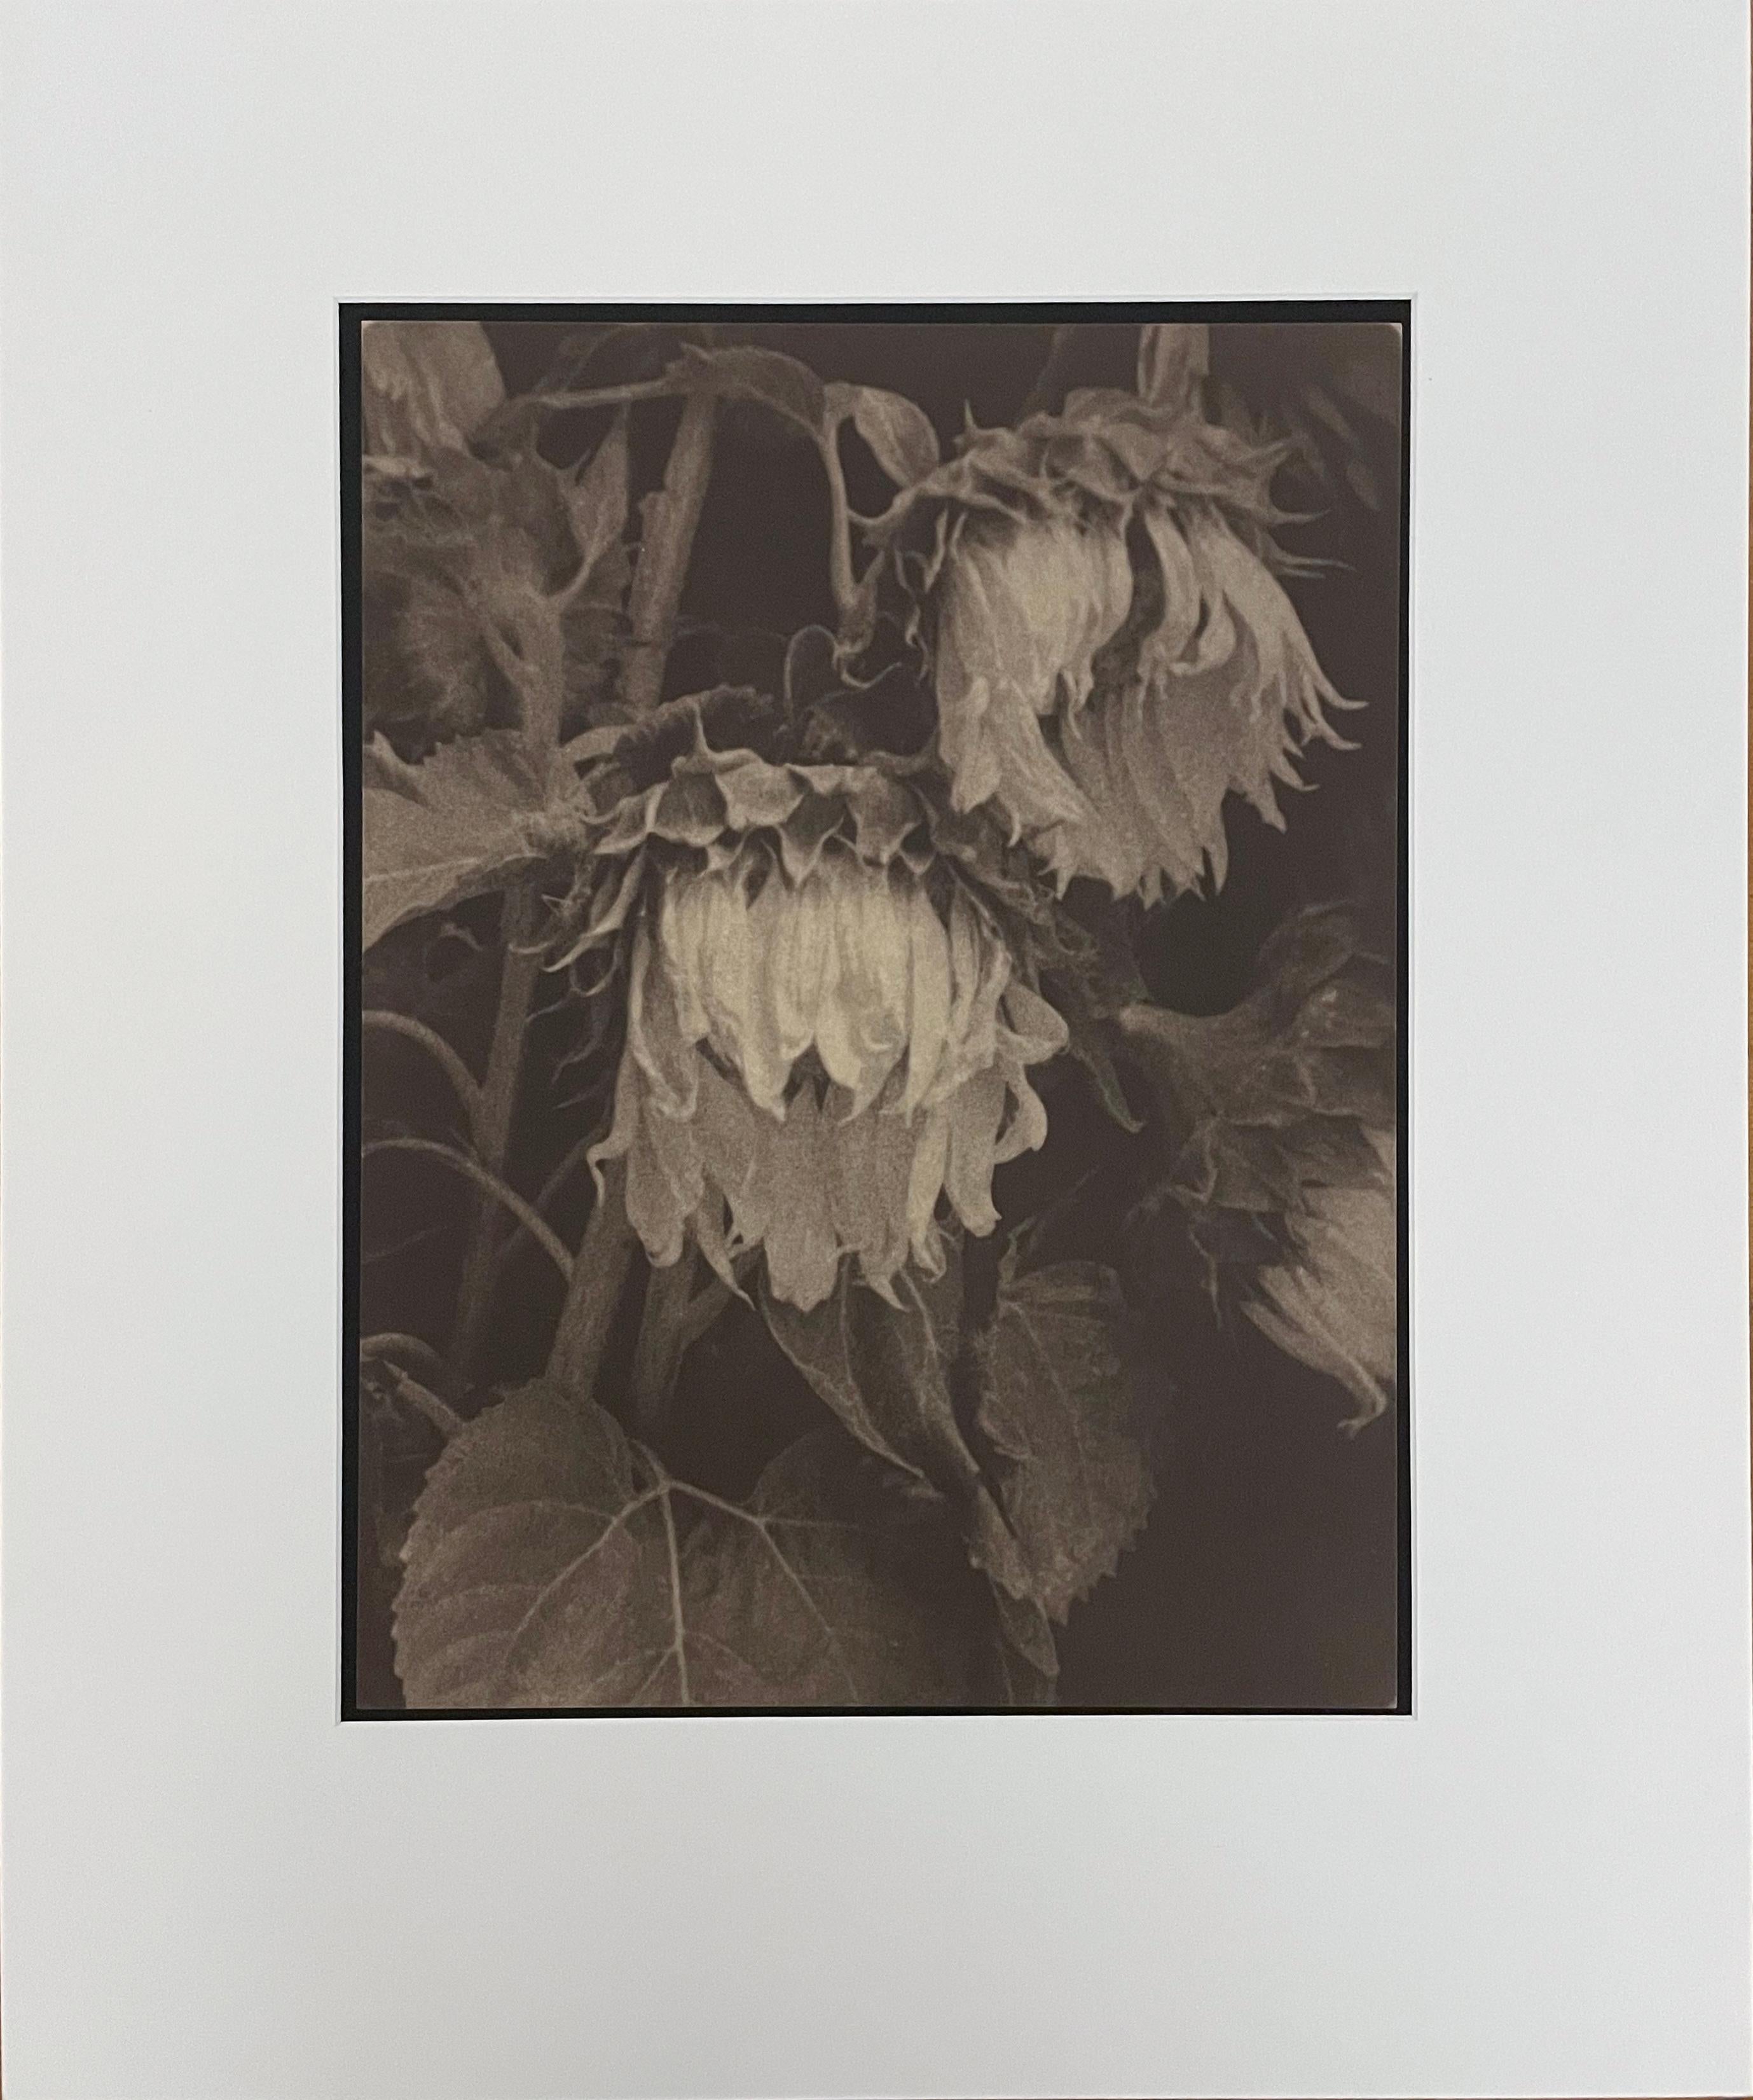 Sonnenblumen von Jan van Leeuwen, 1995, Kallitype, Stilllebenfotografie – Photograph von Jan Van Leeuwen